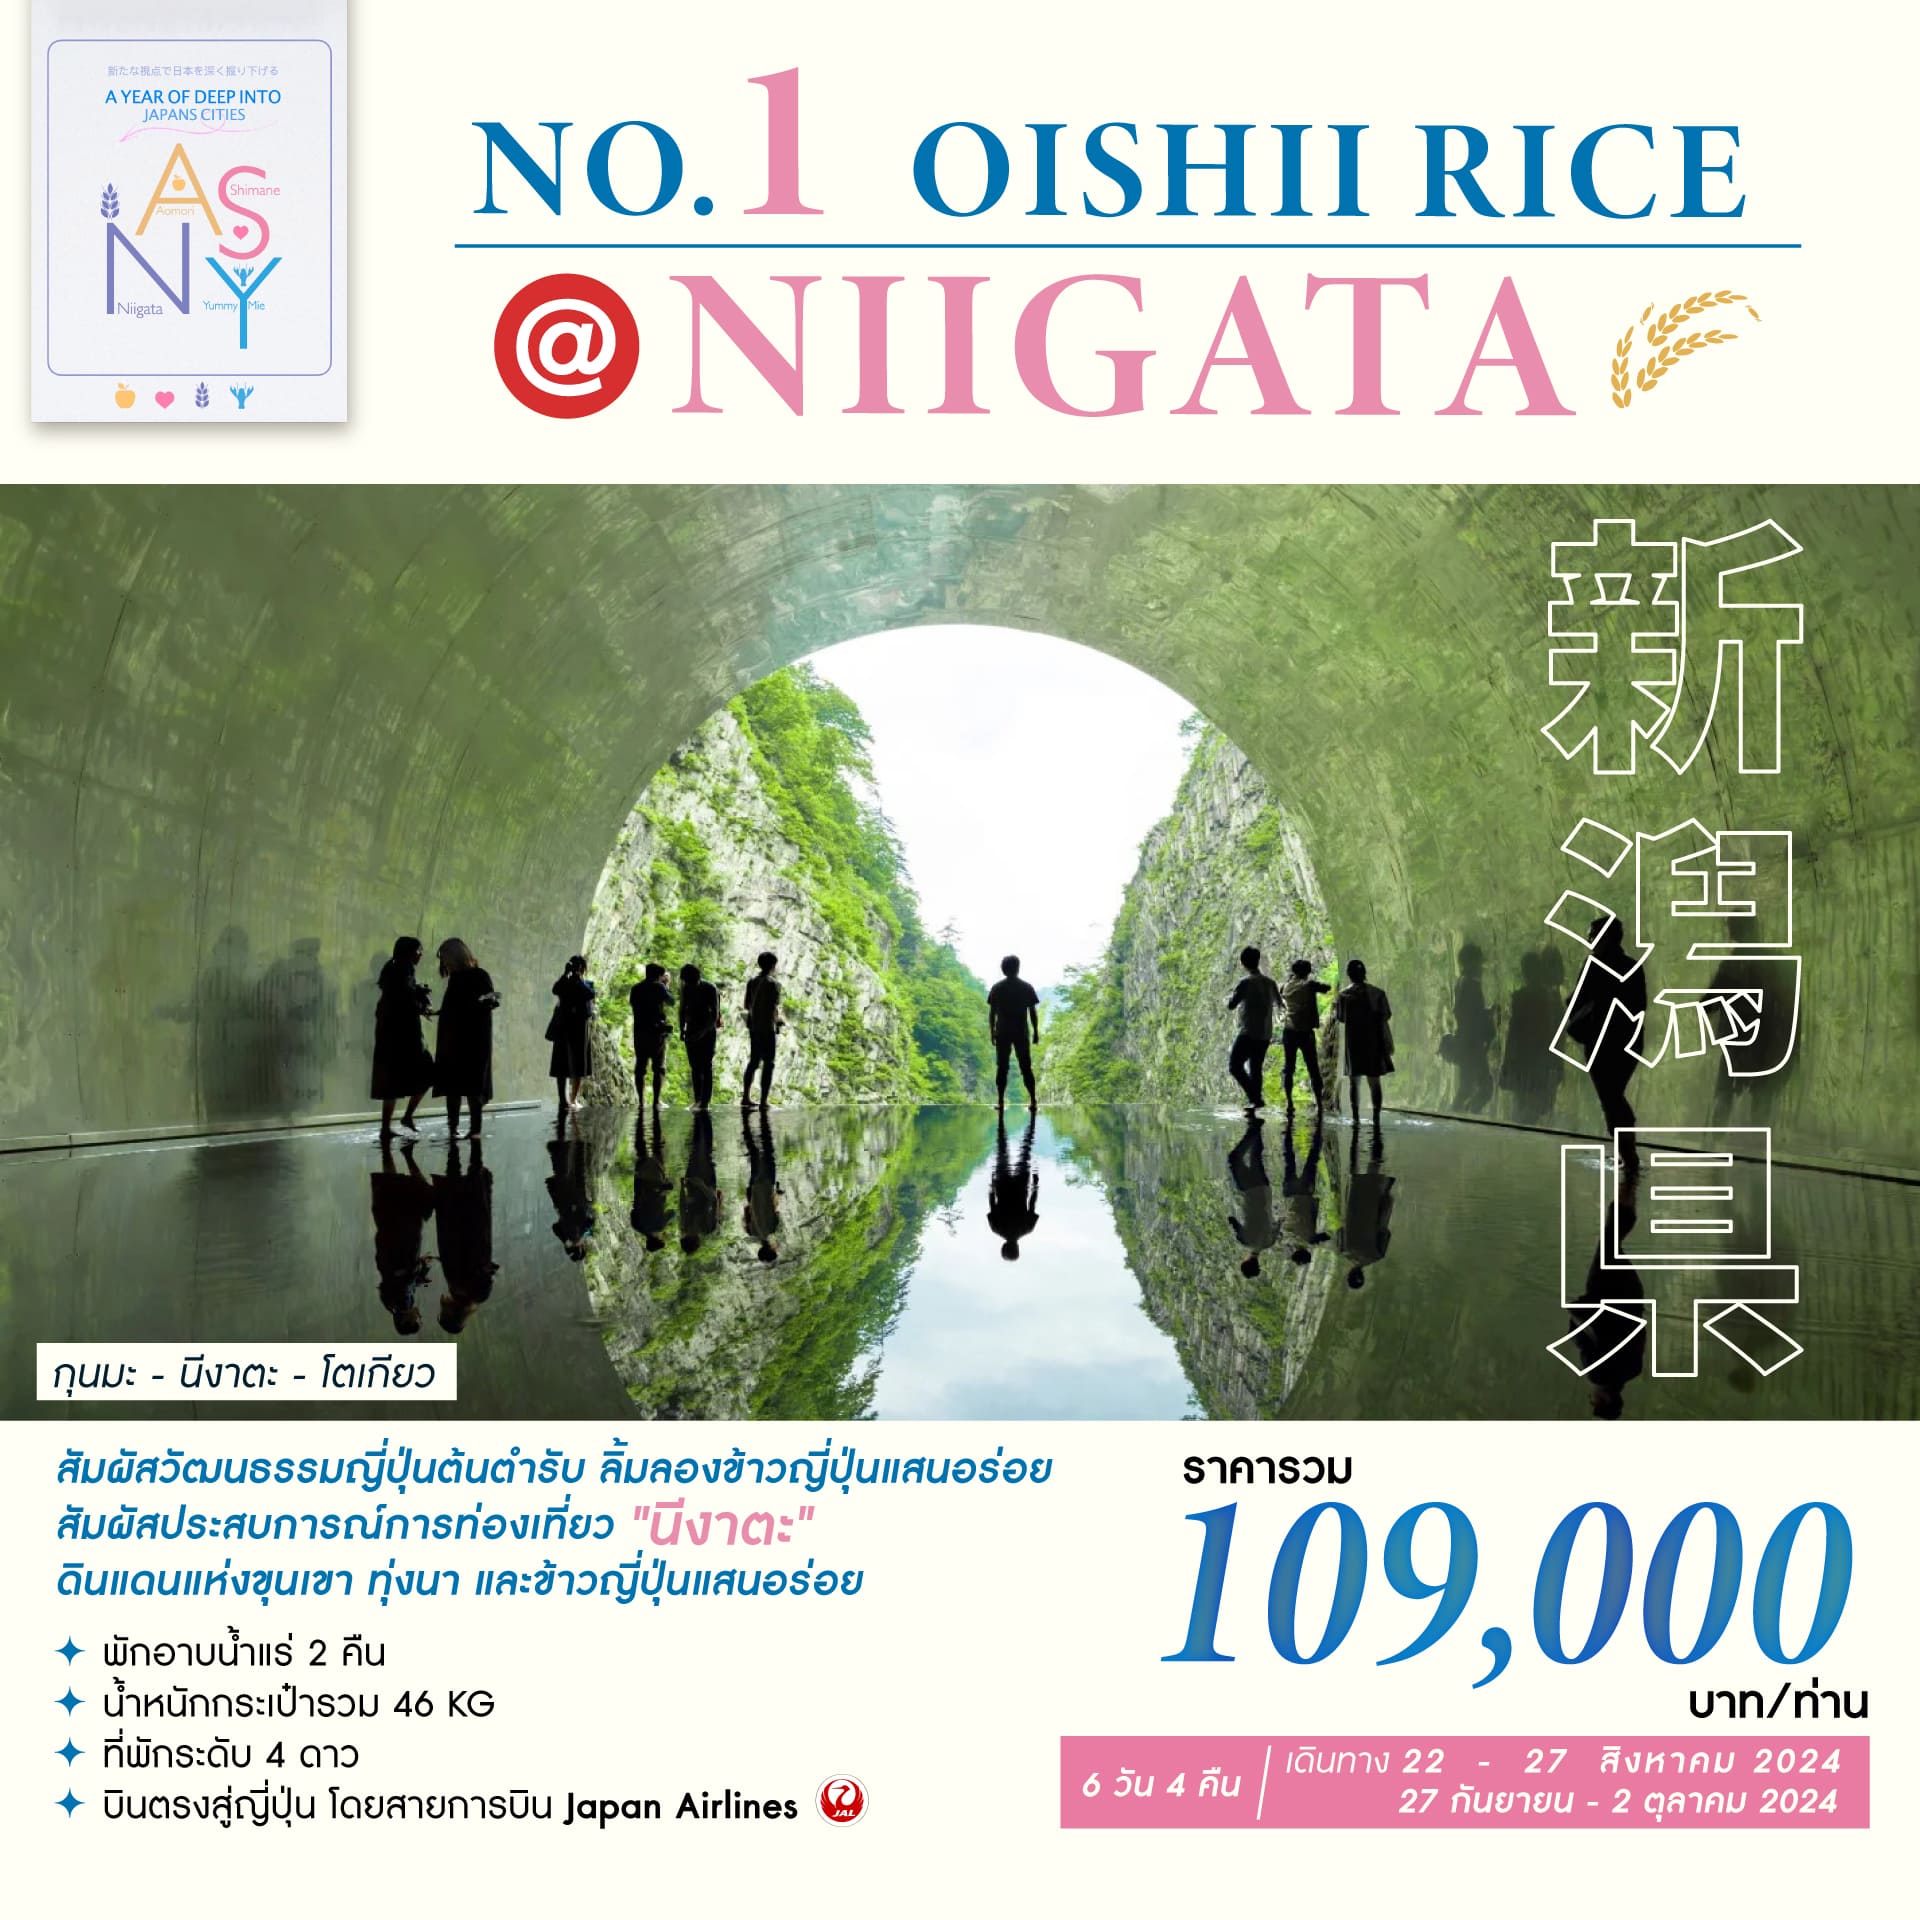 ทัวร์ญี่ปุ่น NO.1 OISHI RICE @NIGATA 6วัน 4คืน (JL)